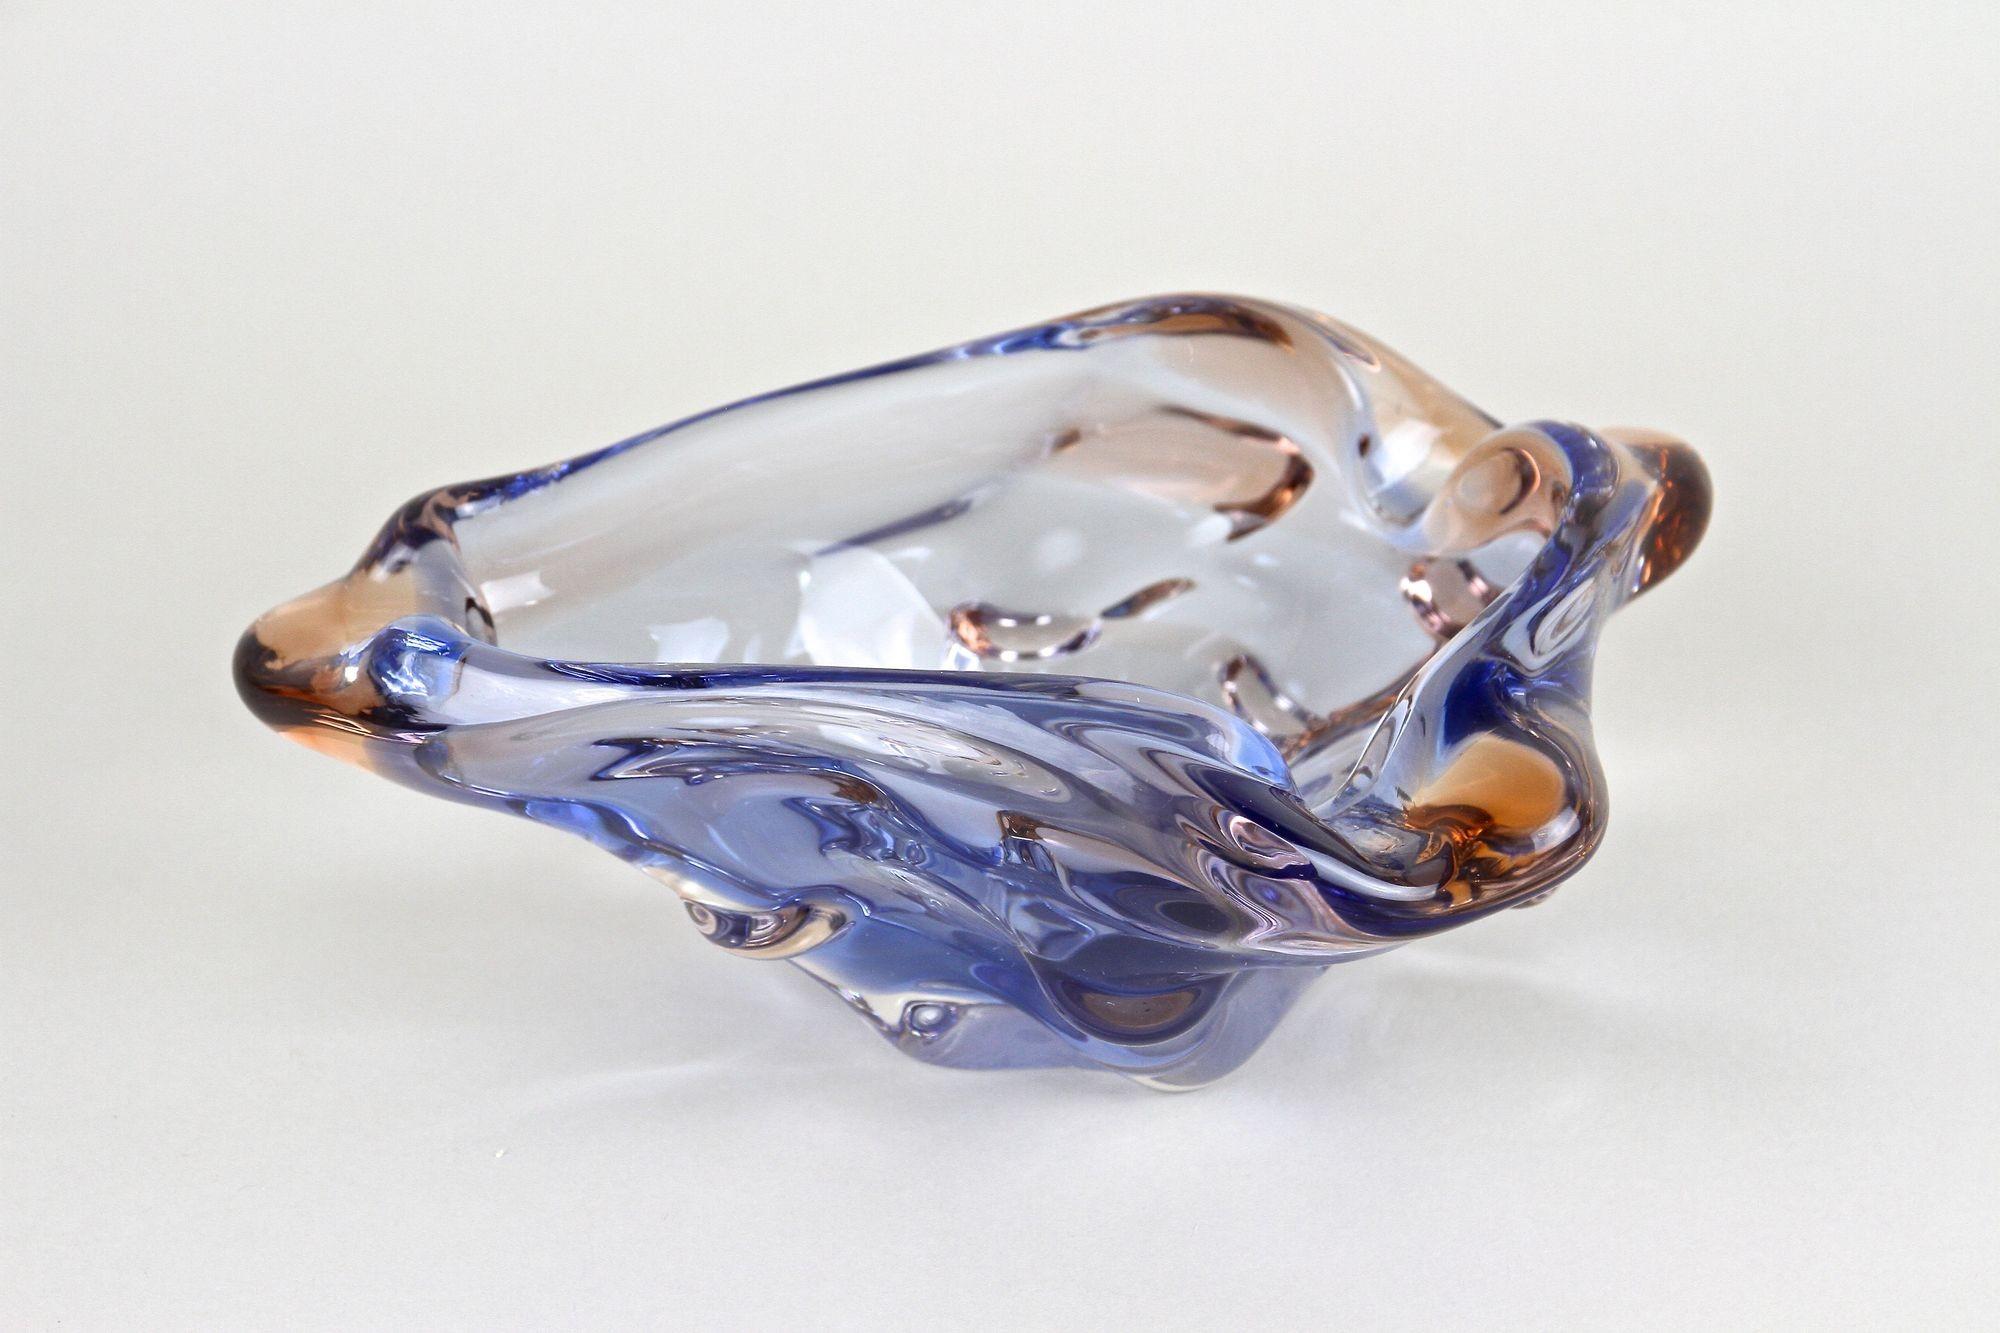 Außergewöhnliche kleine Murano-Glasschale aus den berühmten Werkstätten in Italien aus der Zeit um 1960/70. In einem fantastischen Blau- und Bernsteinton gefärbt, beeindruckt diese erstaunlich gestaltete, zeitgenössische Glasschale mit ihrem